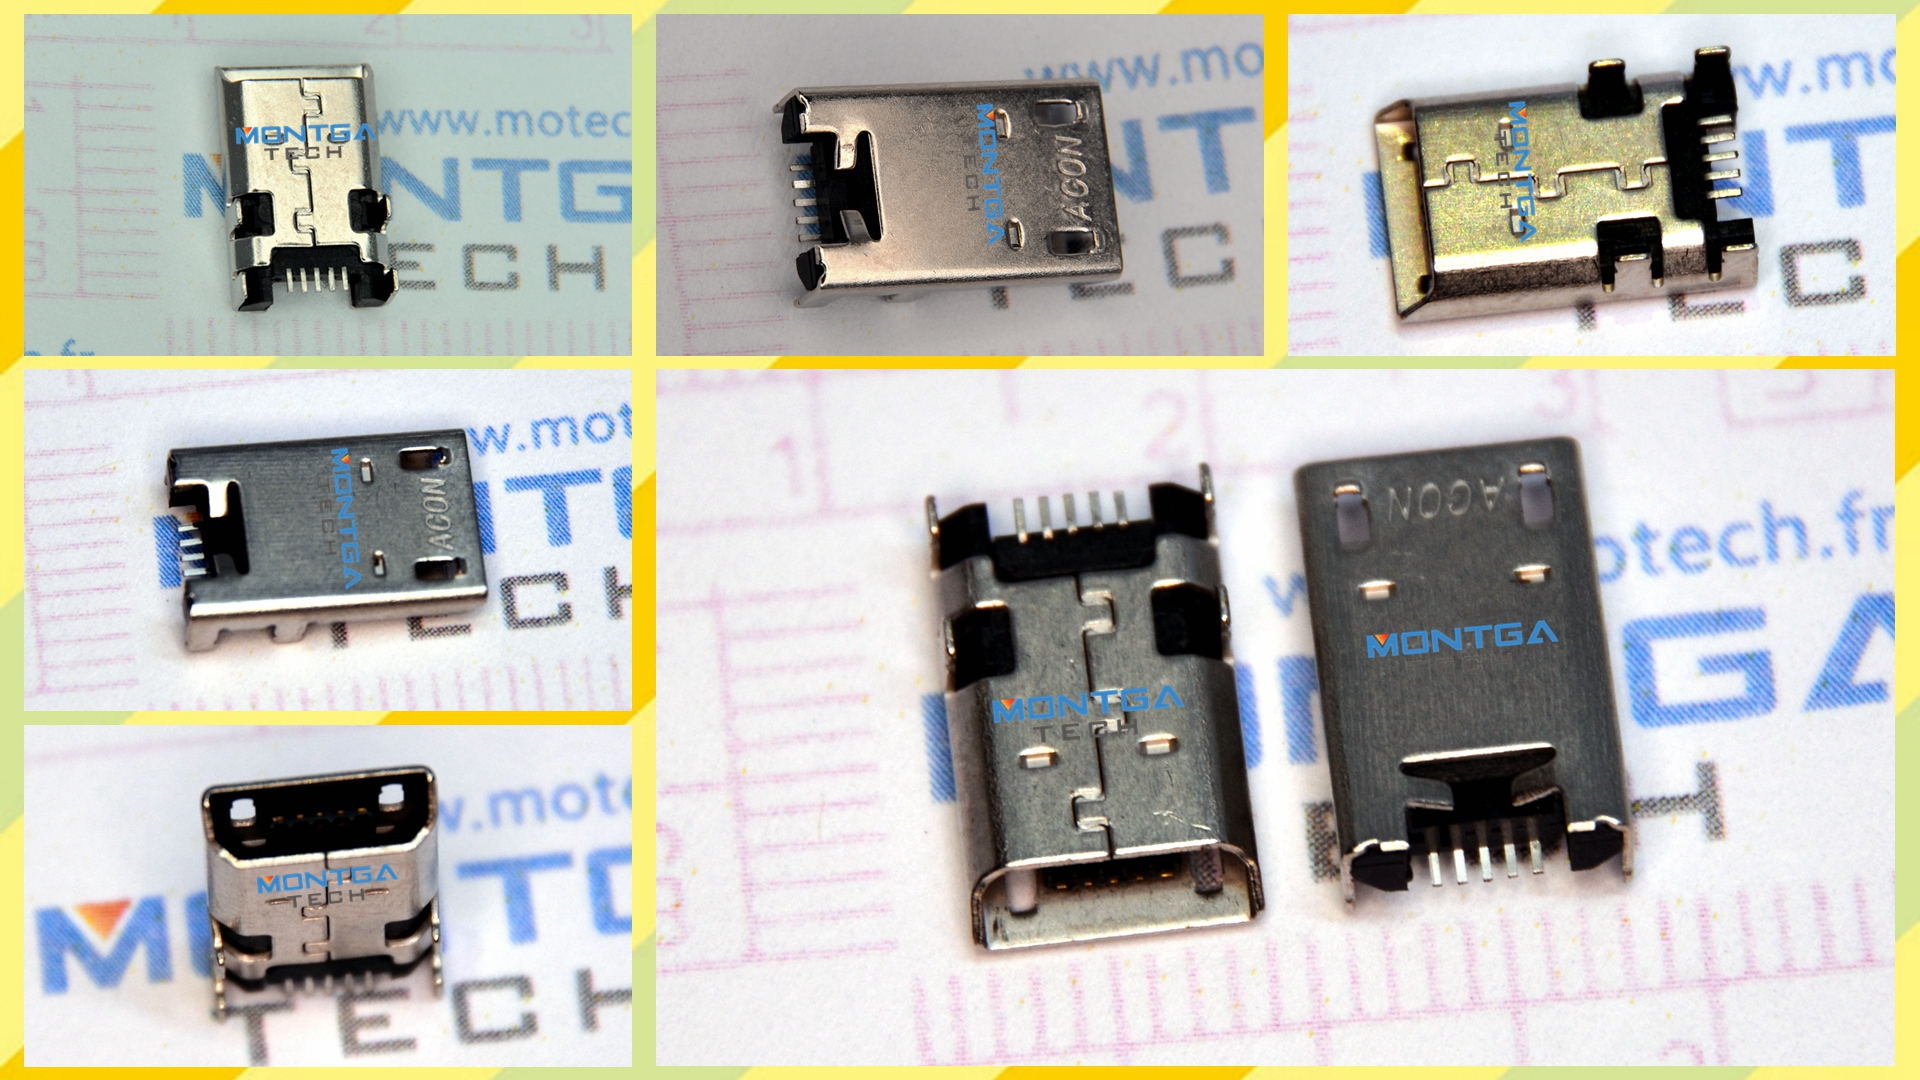  Asus ME301T MeMO Pad Smart 10 K001 Micro USB, Asus ME301T MeMO Pad Smart 10 K001 Port USB à souder, Asus ME301T MeMO Pad Smart 10 K001 USB待焊接头, Asus ME301T MeMO Pad Smart 10 K001 电源接口, Asus ME301T MeMO Pad Smart 10 K001 DC IN, Asus ME301T MeMO Pad Smart 10 K001 充电口, Asus ME301T MeMO Pad Smart 10 K001 电源头, Asus ME301T MeMO Pad Smart 10 K001 电源口, Asus ME301T MeMO Pad Smart 10 K001 不充电, Asus ME301T MeMO Pad Smart 10 K001 充电故障,Asus ME301T MeMO Pad Smart 10 K001 尾插, 